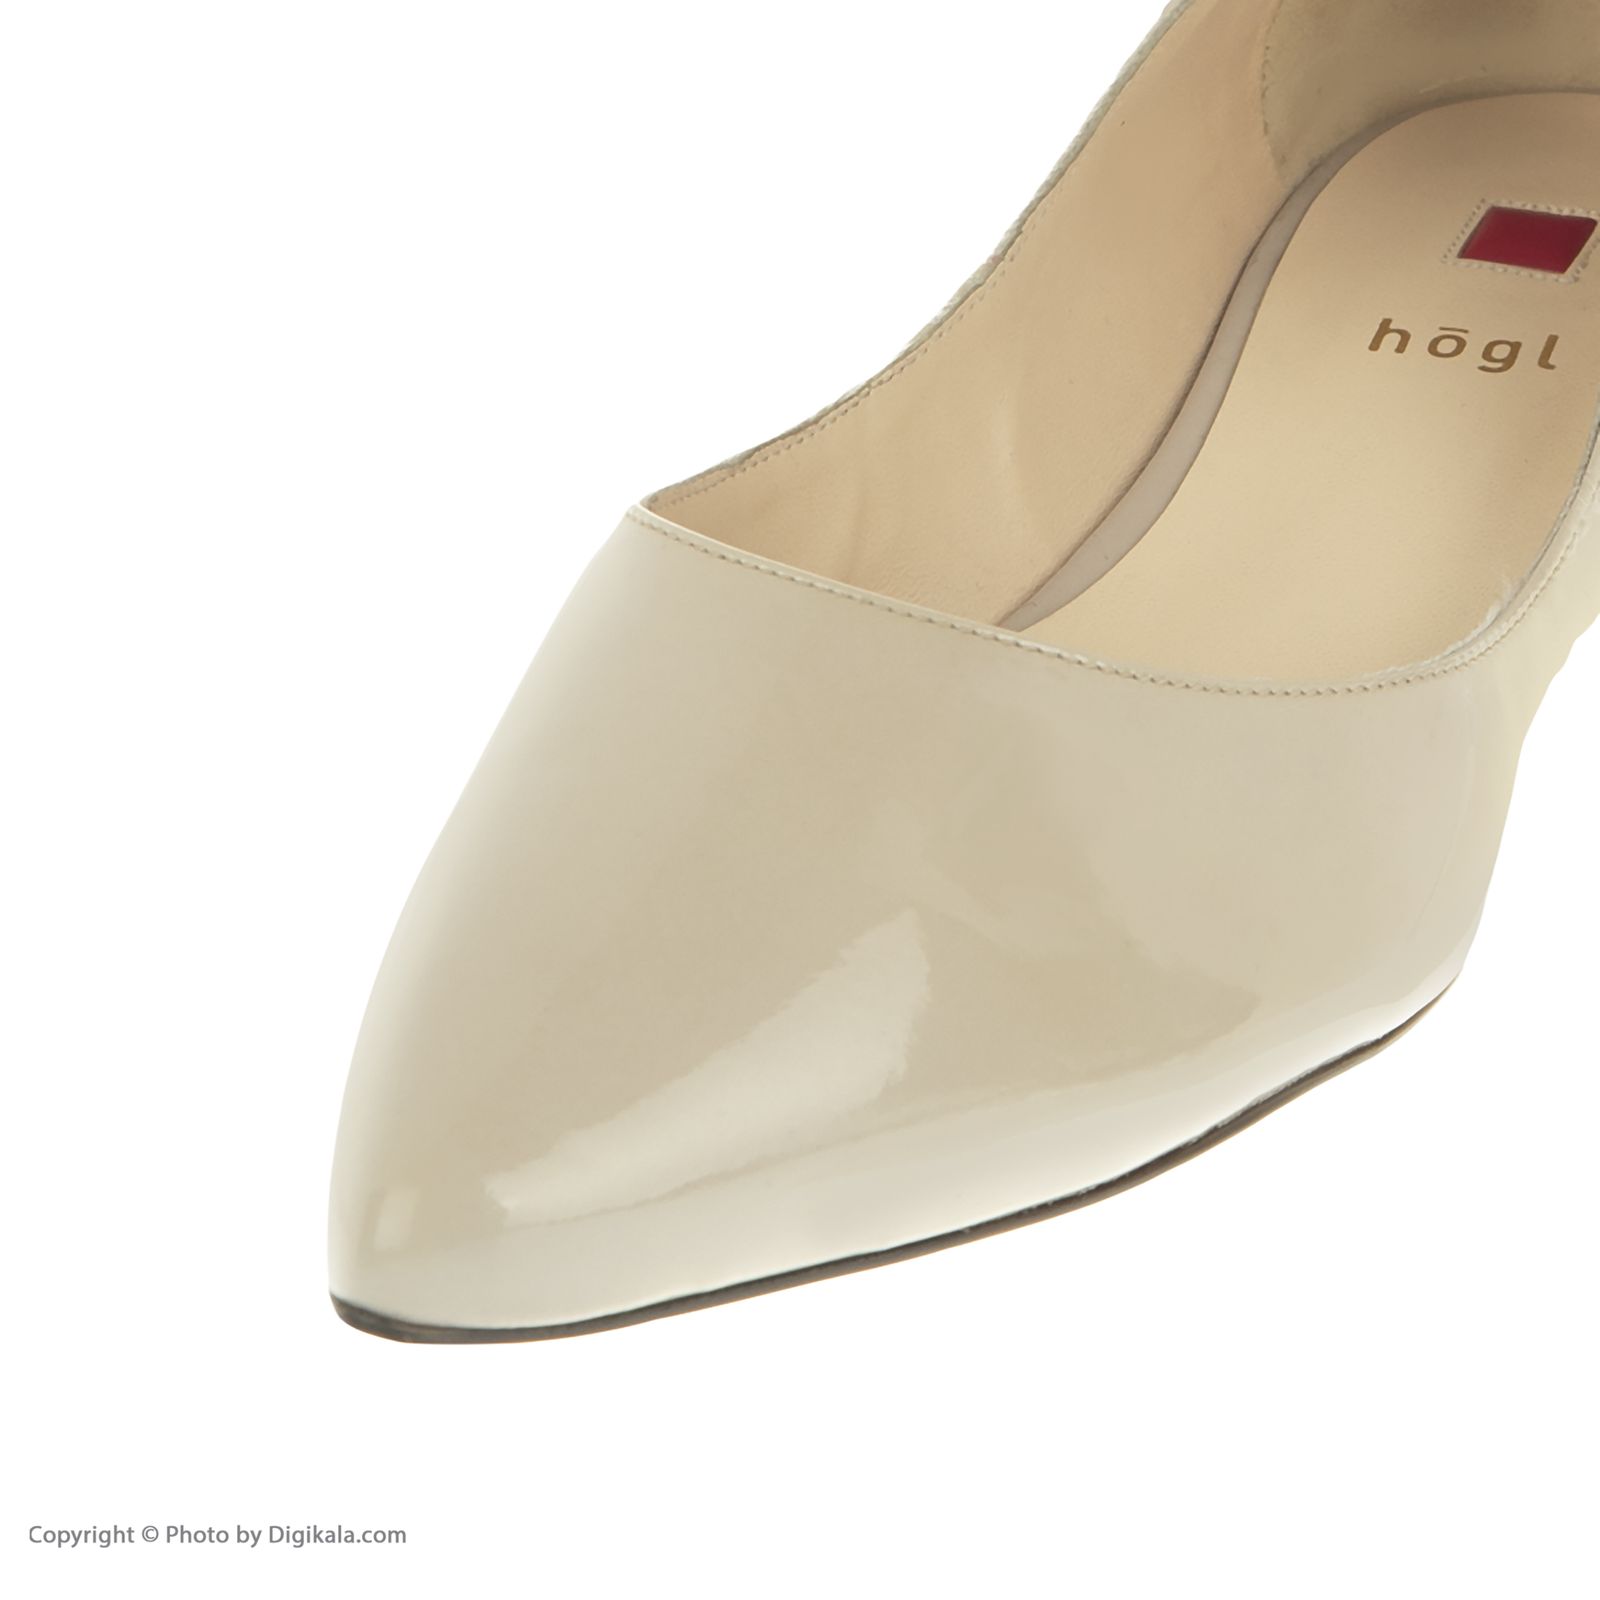 کفش زنانه هوگل مدل 1-100005-0800 - کرم - 7